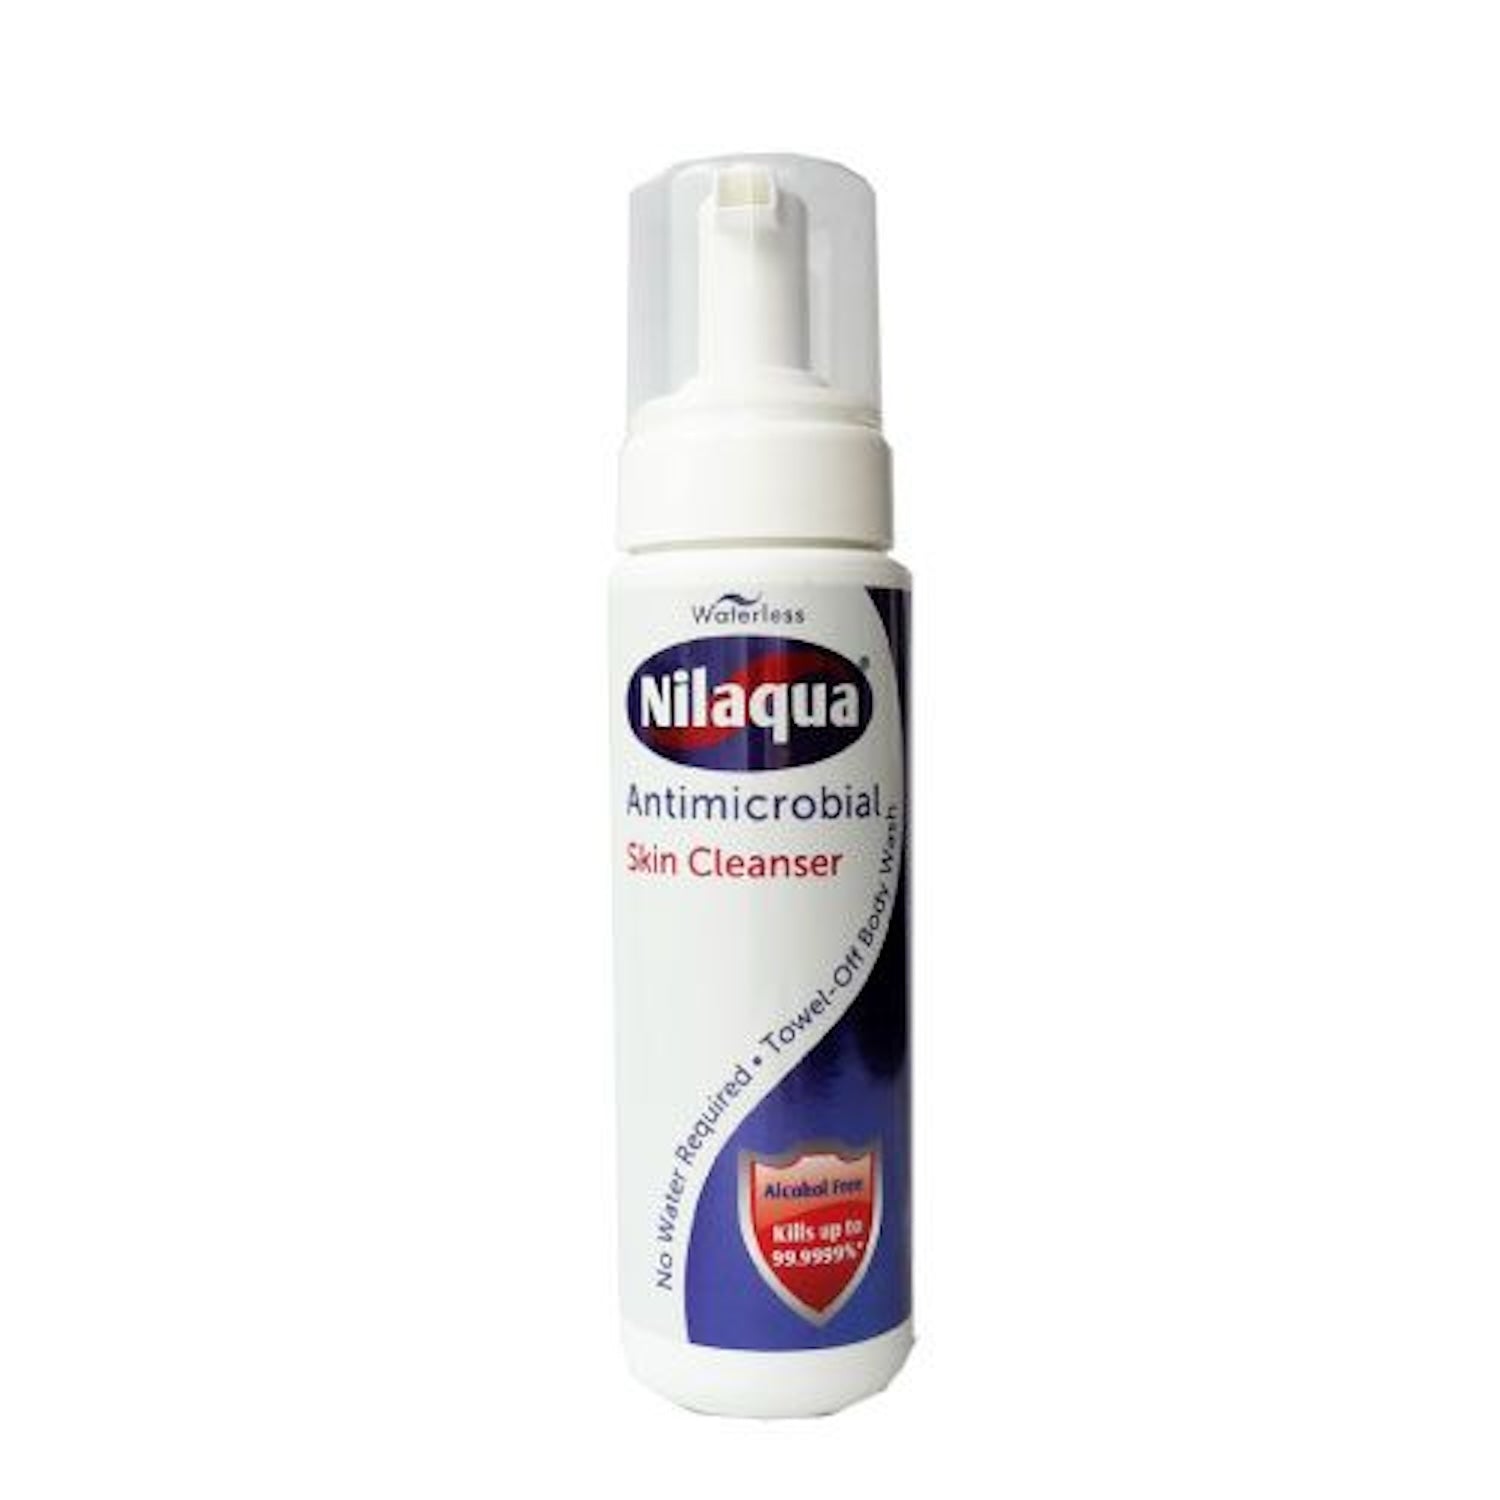 Nilaqua Skin Cleansing Foam | Antimicrobial | 200ml